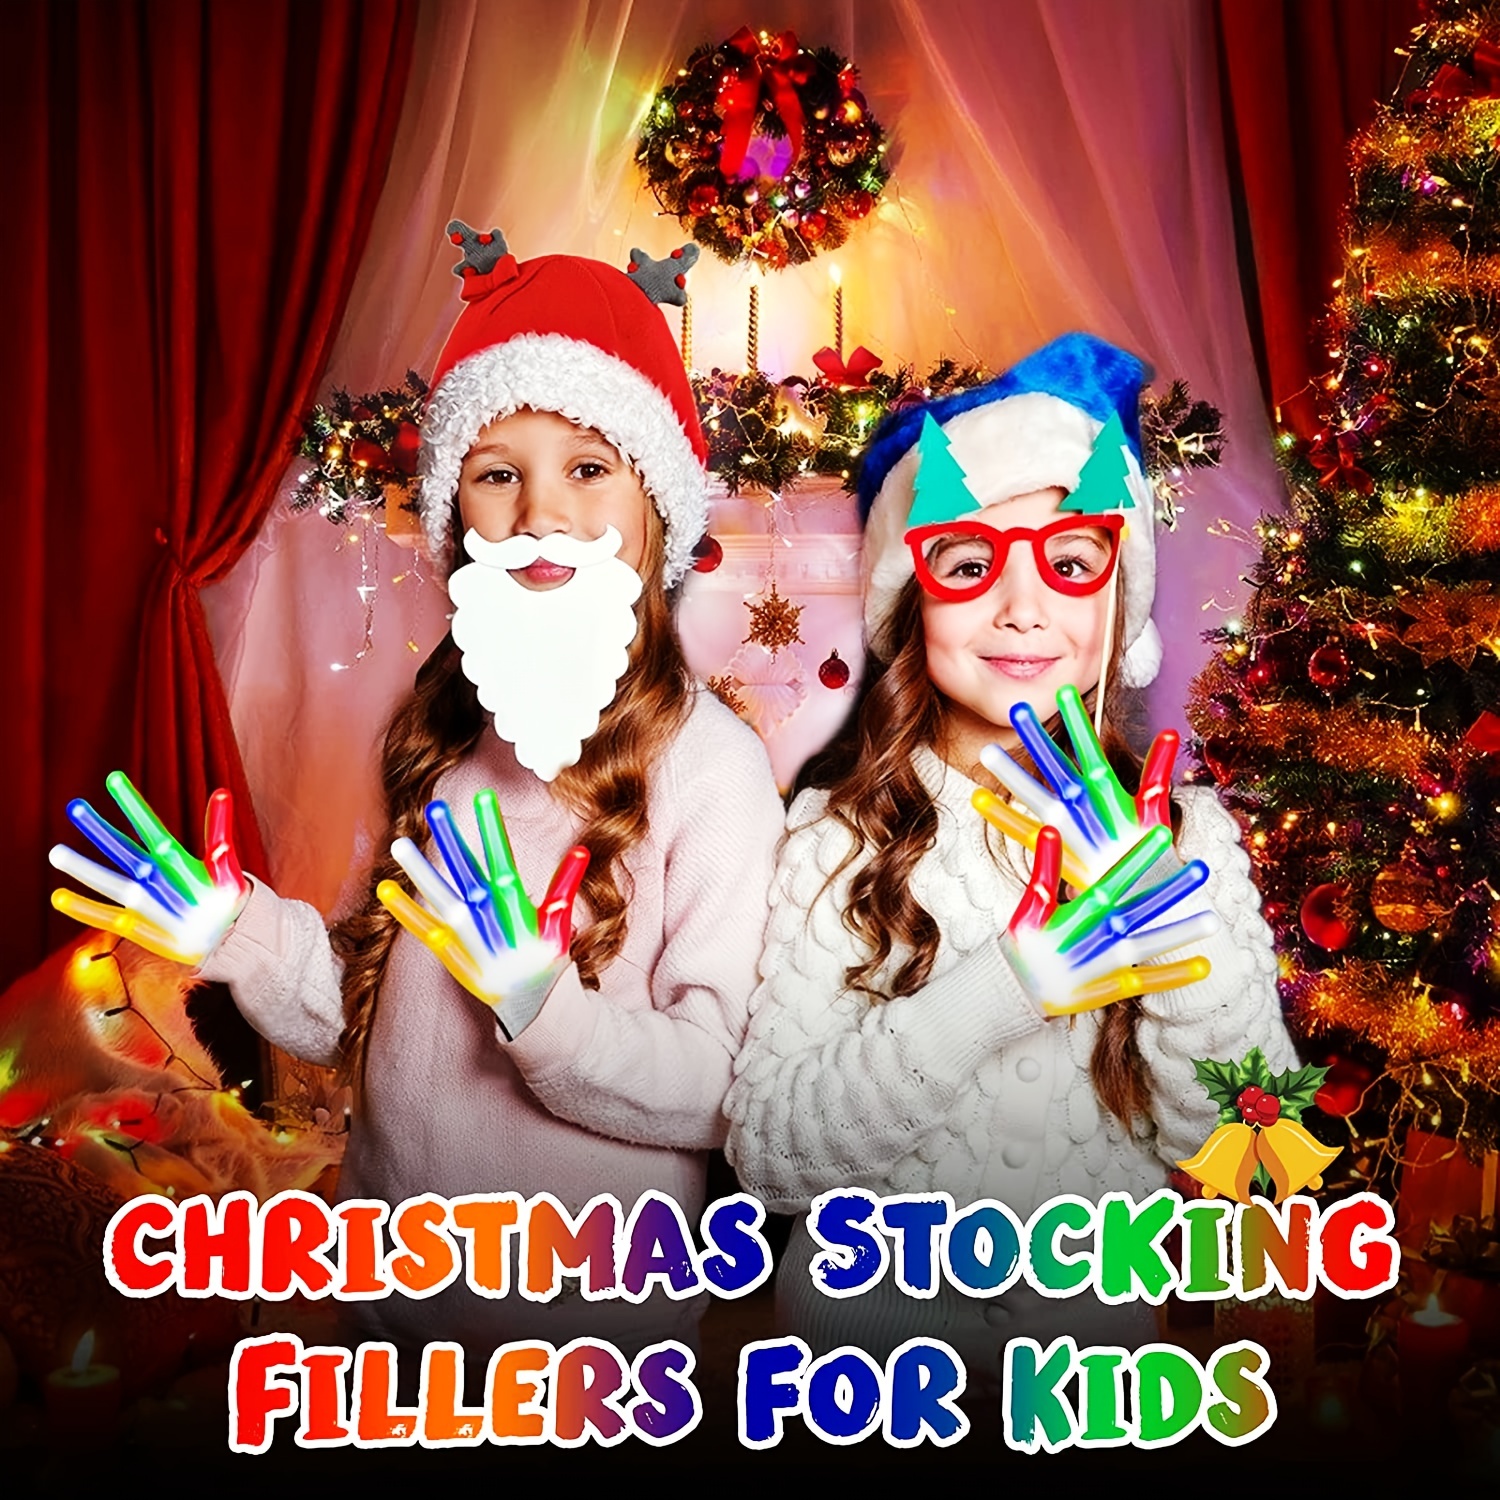 Cool Toys - Guantes LED de 12 colores, guantes con luz intermitente,  juguetes para niños y niñas de 3 a 8 años, regalos para Halloween, Navidad